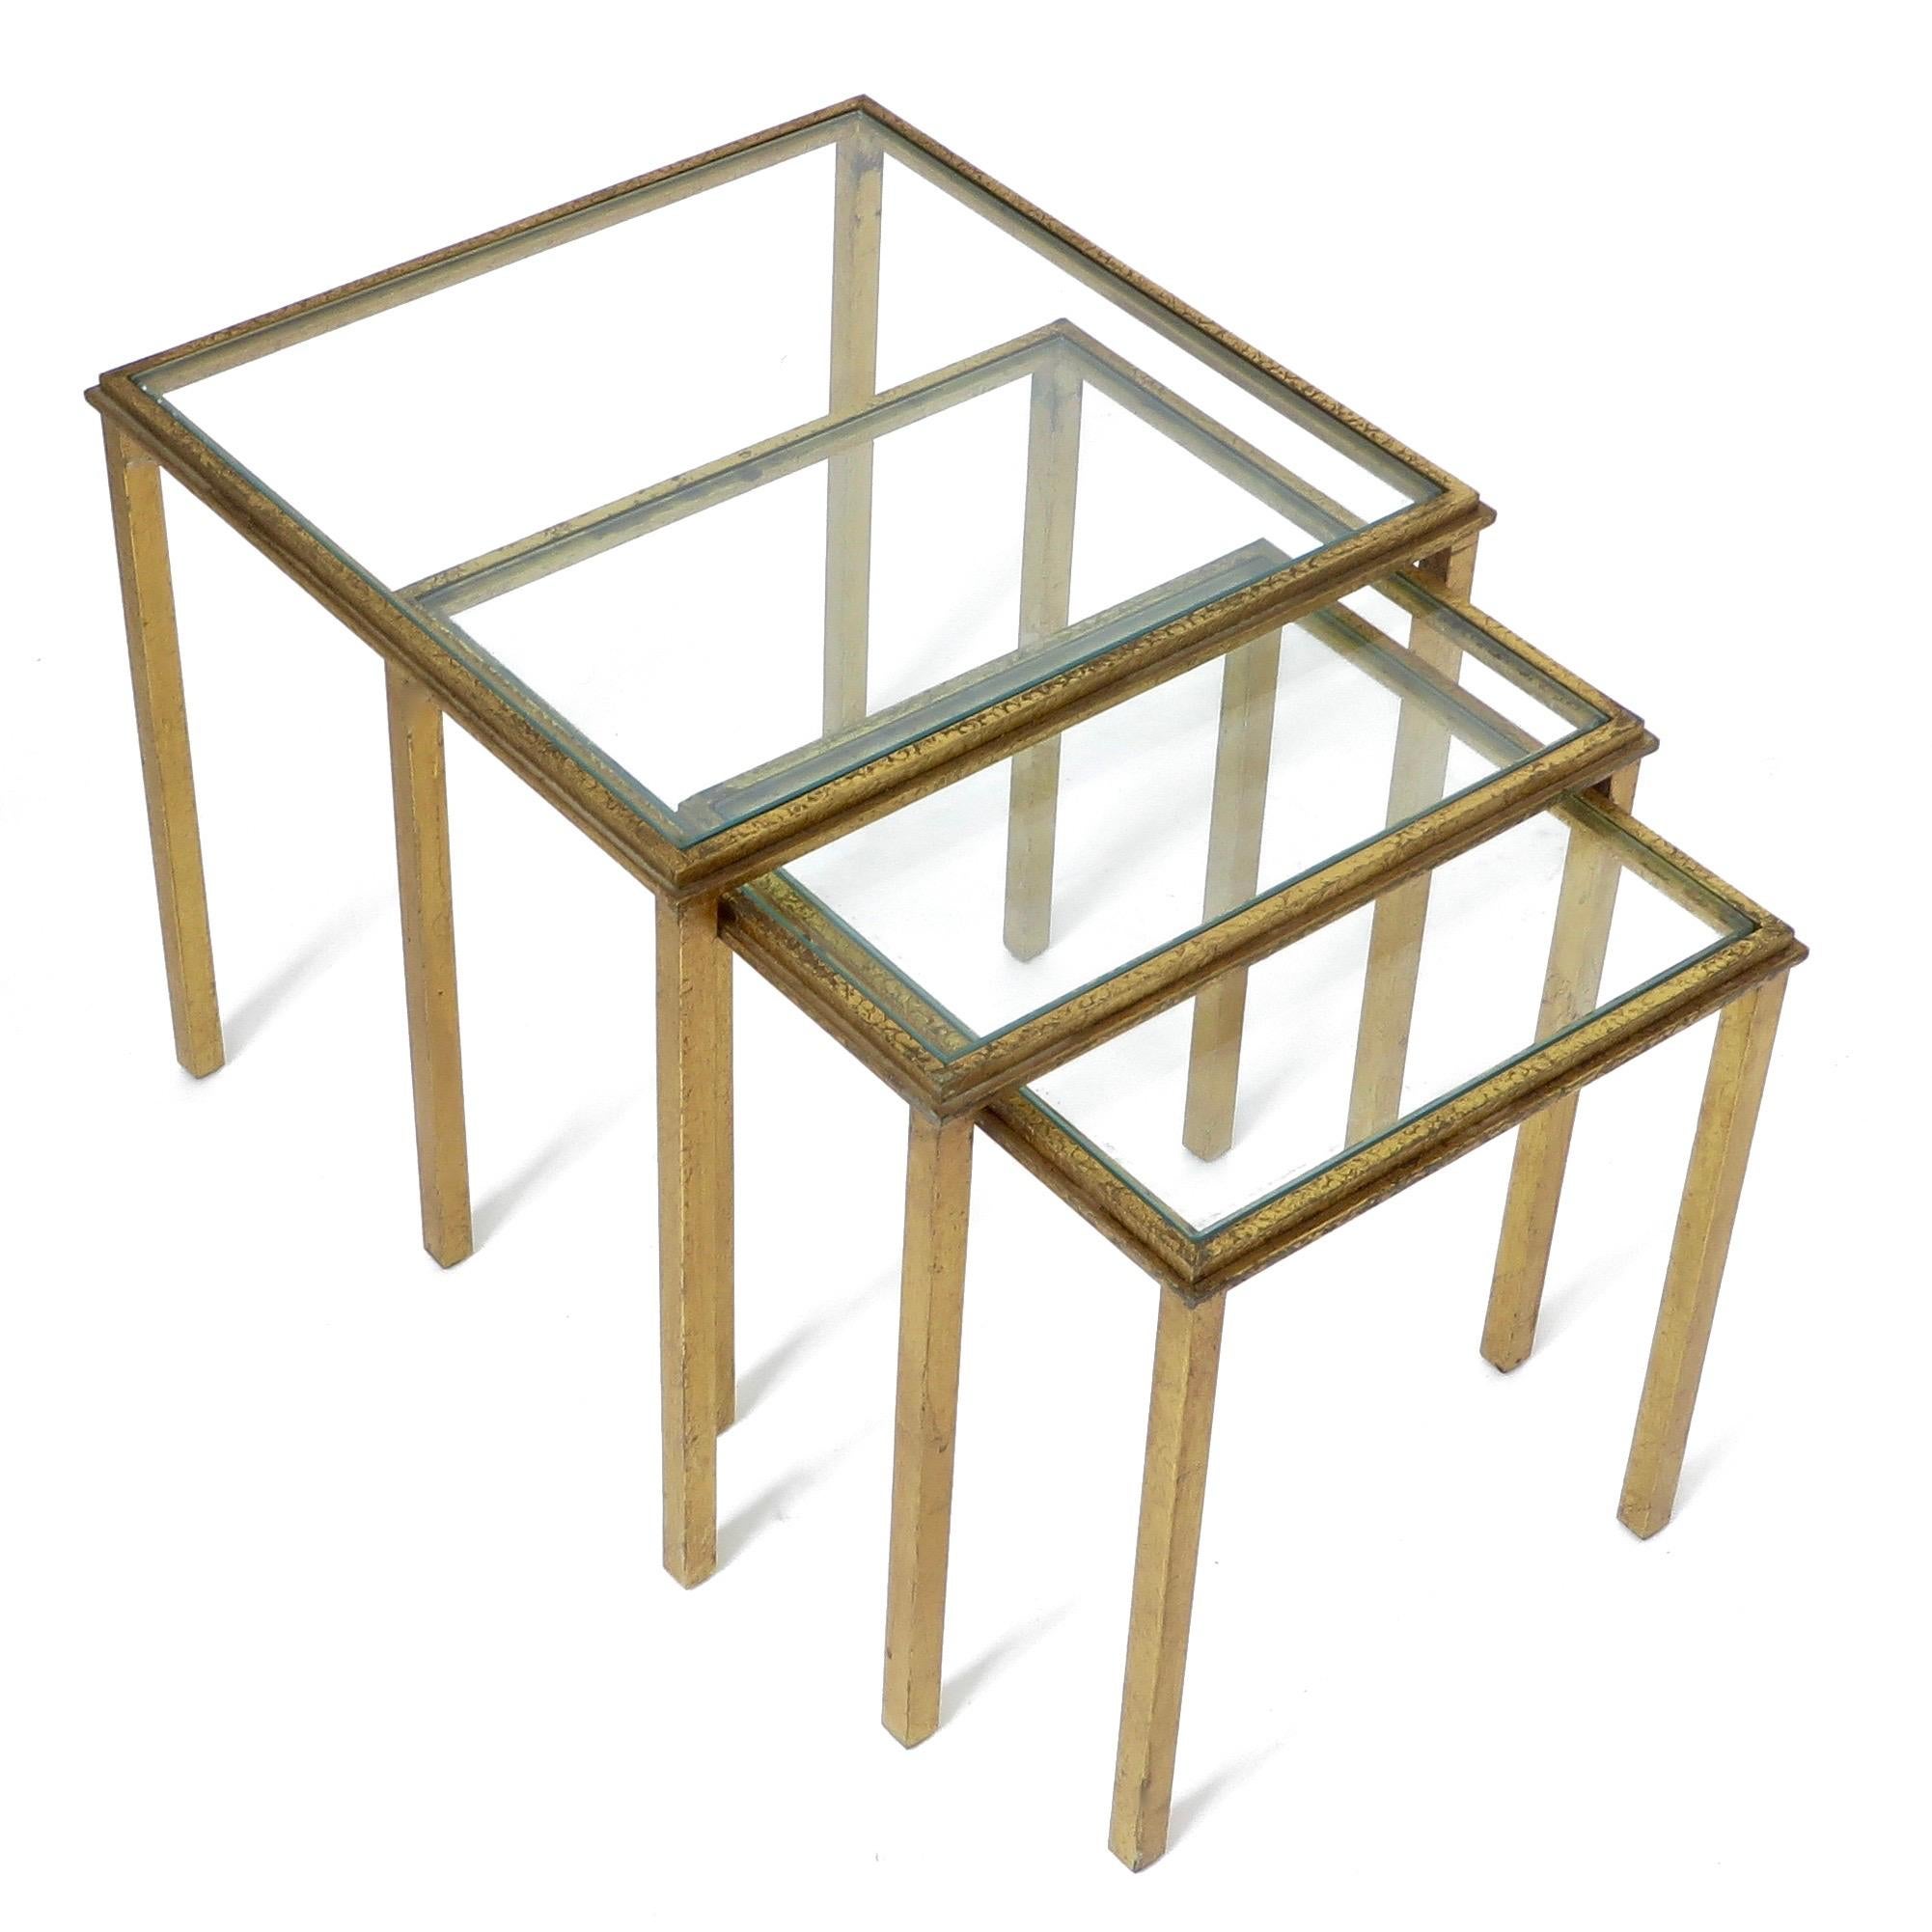 Ensemble de trois tables gigognes en fer doré, datant d'environ 1960 et créées par un designer français. 
Roger Thibier.
Estampillé Roger Thibier.
Le plus grand : 15